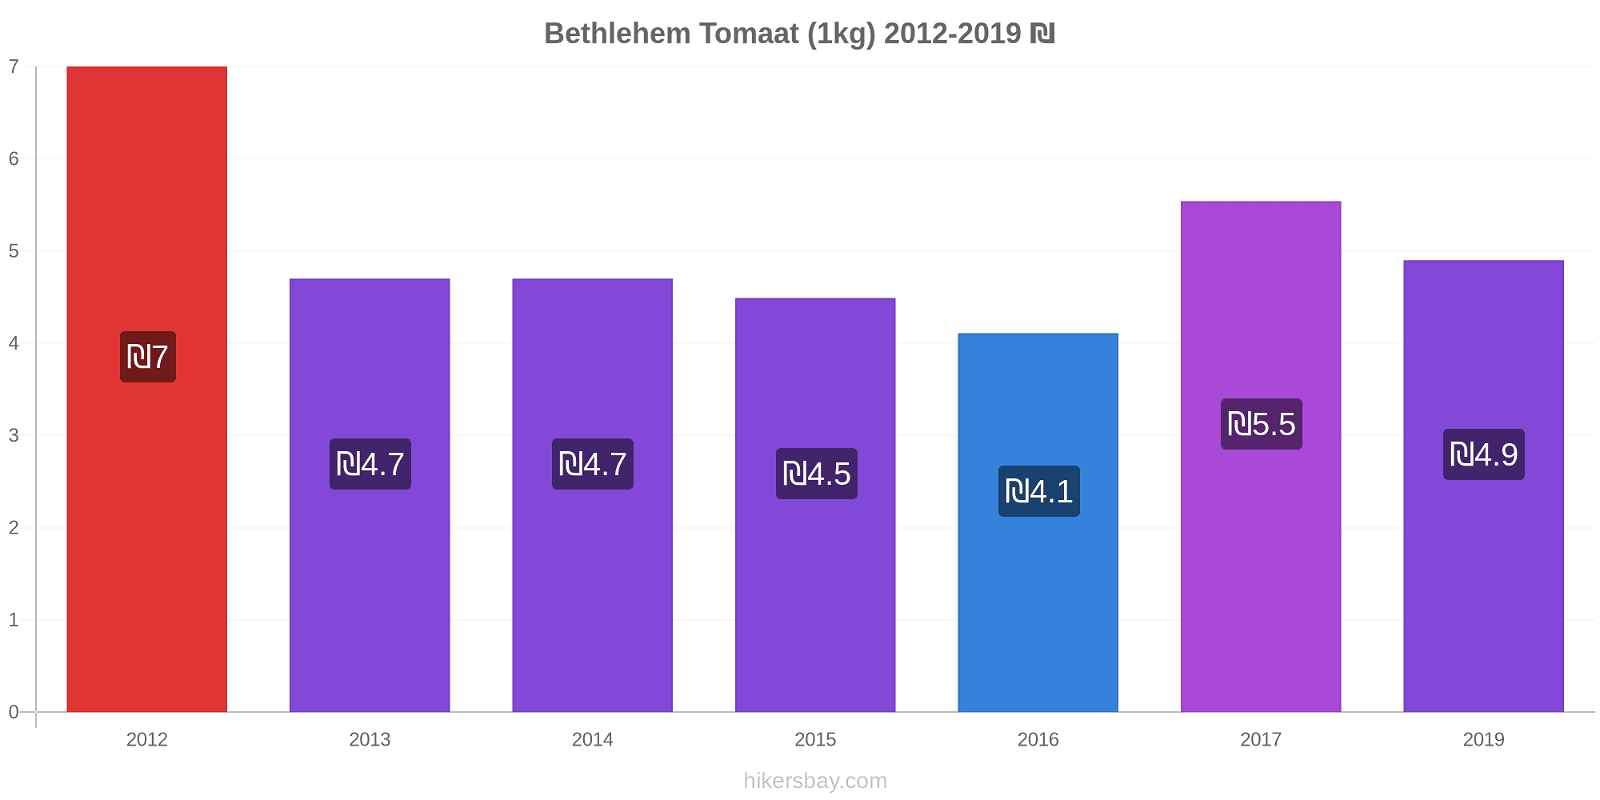 Bethlehem prijswijzigingen Tomaat (1kg) hikersbay.com